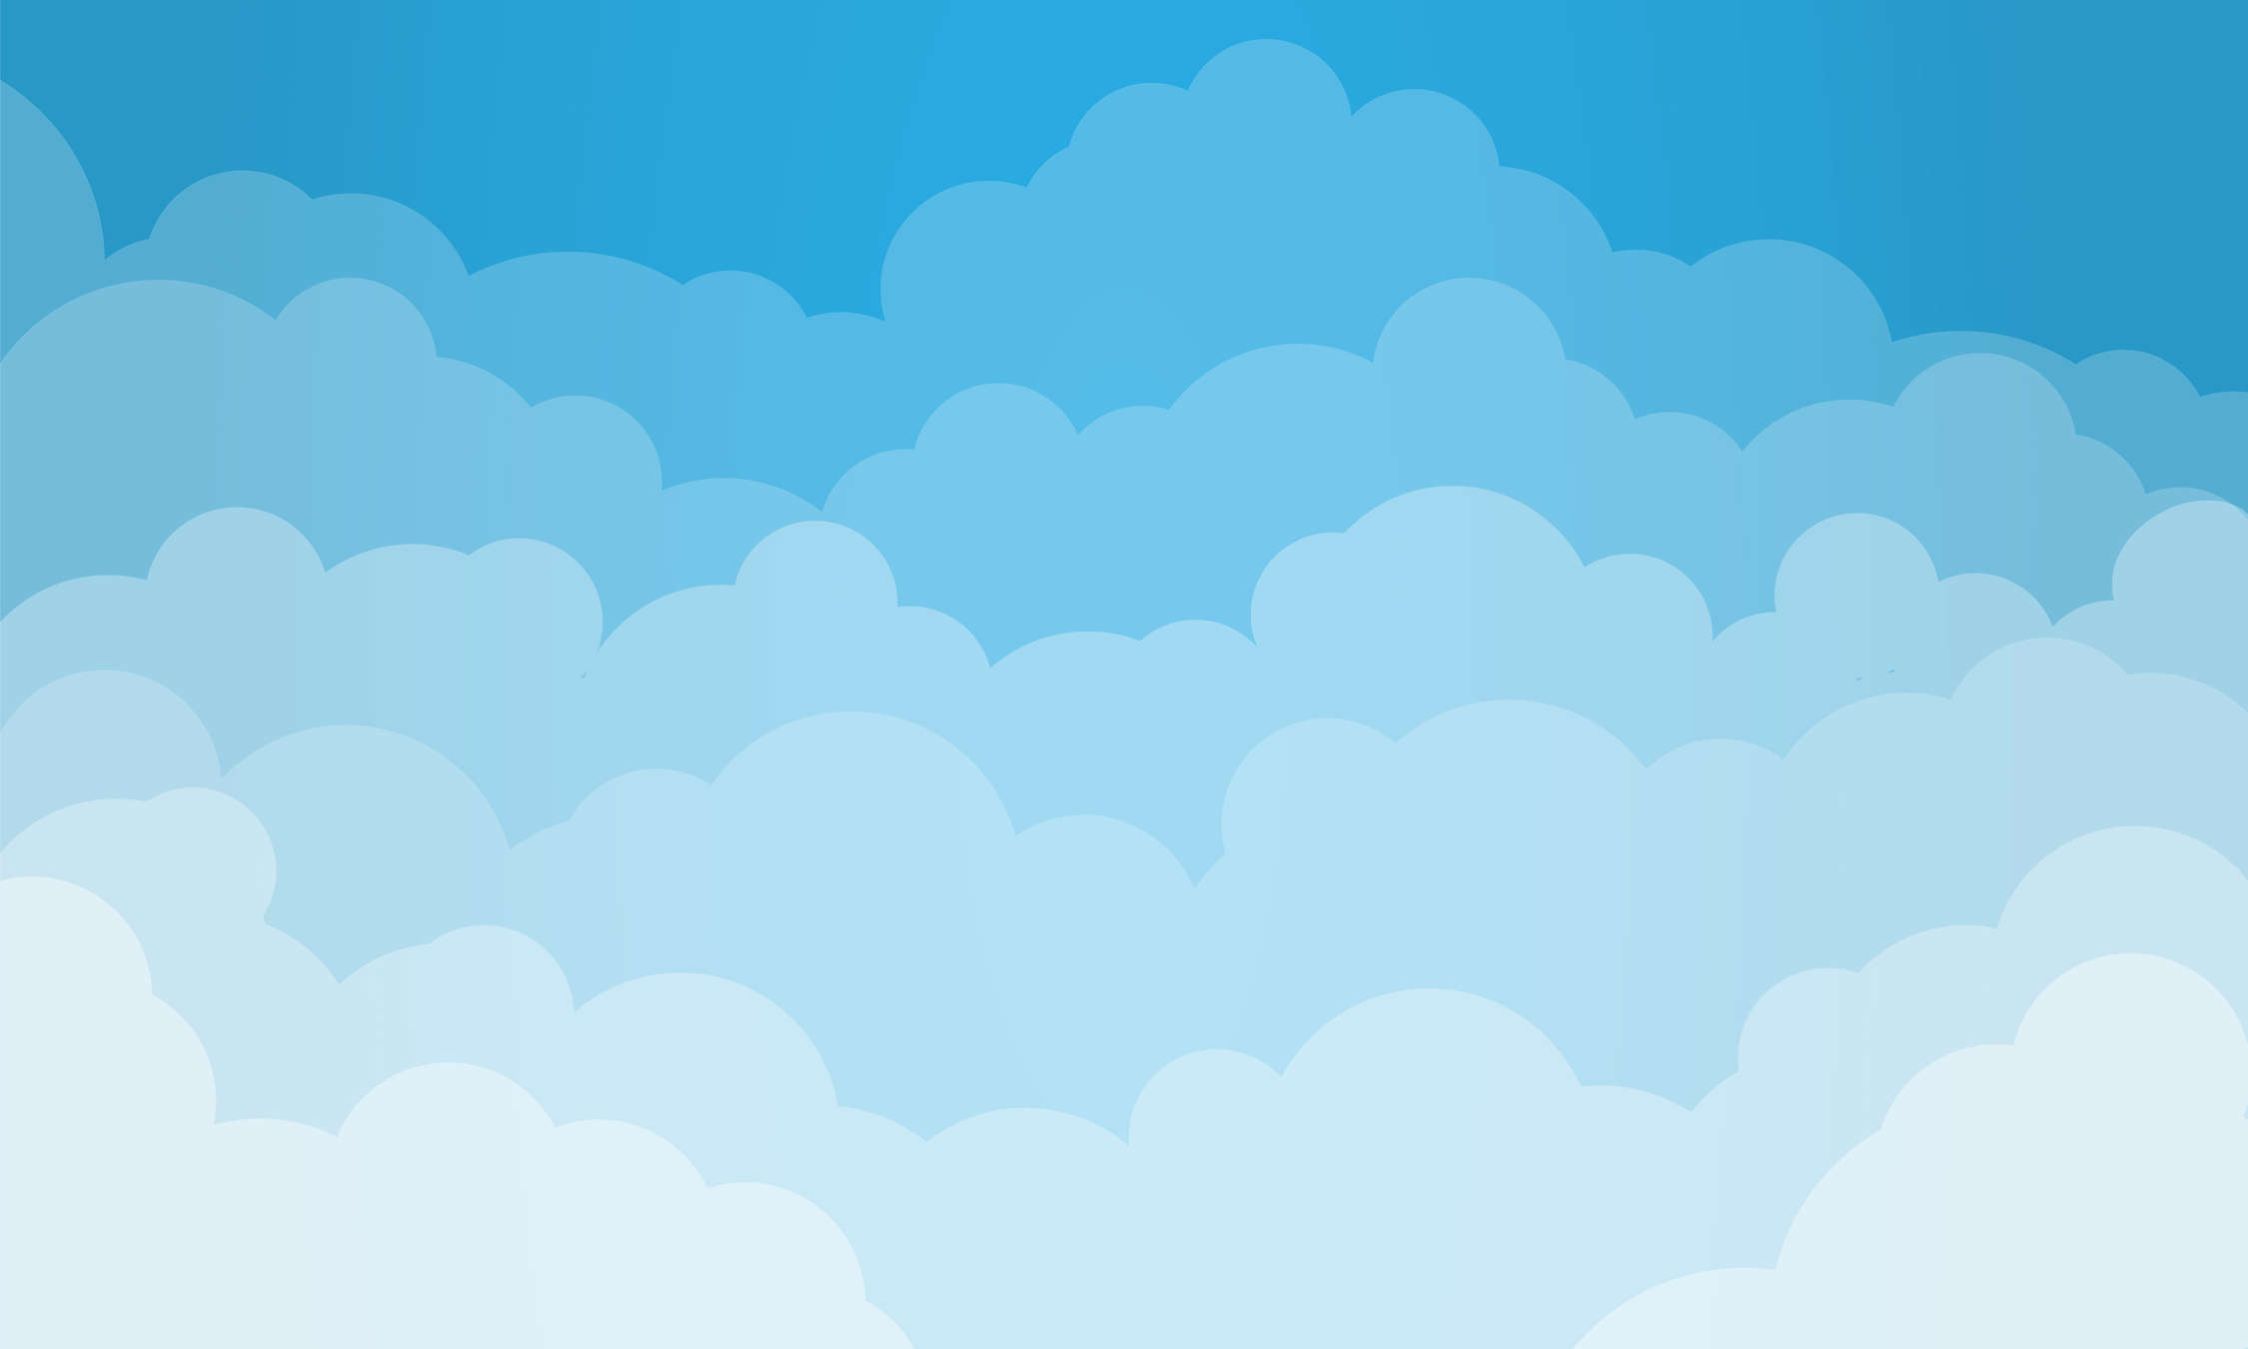             Fotomural Cielo con nubes en estilo cómic - Tela no tejida lisa y mate
        